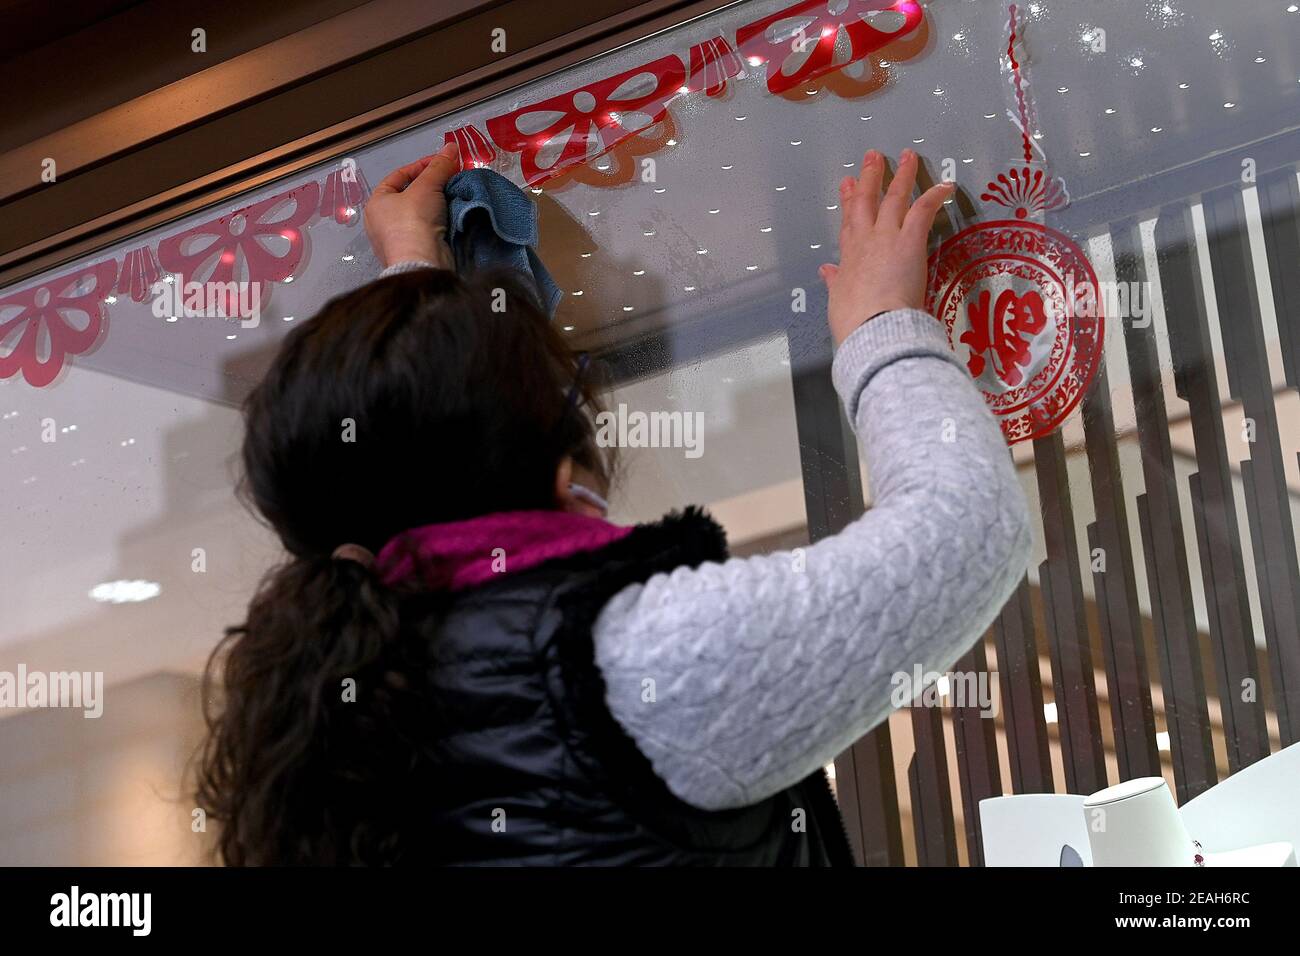 New York, USA. Februar 2021, 09th. Eine Frau schmückt das Fenster eines Juwelierladens Tage vor Beginn des chinesischen Neujahrsfestes in Manhattans Chinatown-Viertel, New York, NY, 9. Februar 2021. Mitglieder der chinesischen Gemeinschaft und anderer asiatischer Kulturen feiern das chinesische Mondneujahr, das Jahr der OX, das am 12. Februar beginnt und bis Januar 31st als wichtigster Feiertag in China gilt. (Foto von Anthony Behar/Sipa USA) Quelle: SIPA USA/Alamy Live News Stockfoto